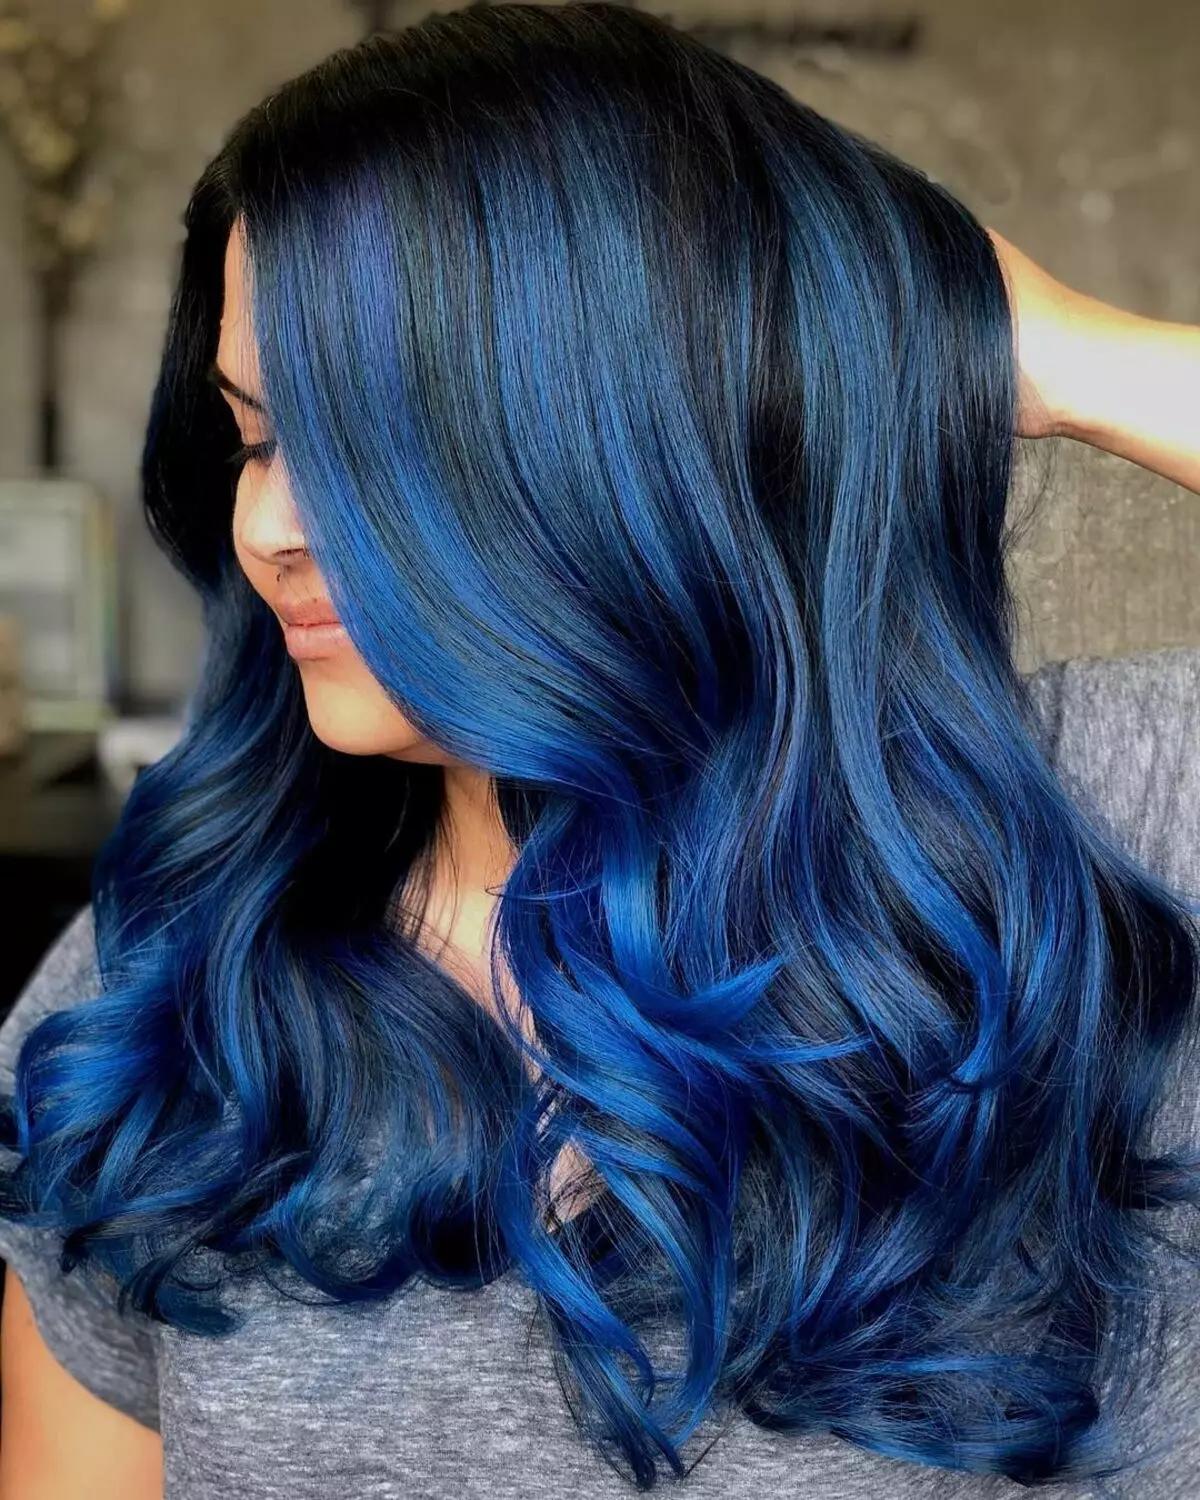 צבע שיער כחול: סקירה של צבעי שיער עמיד עם צבת כחול, מ כחול בהיר לגוונים שחורים וכחולים 5402_4